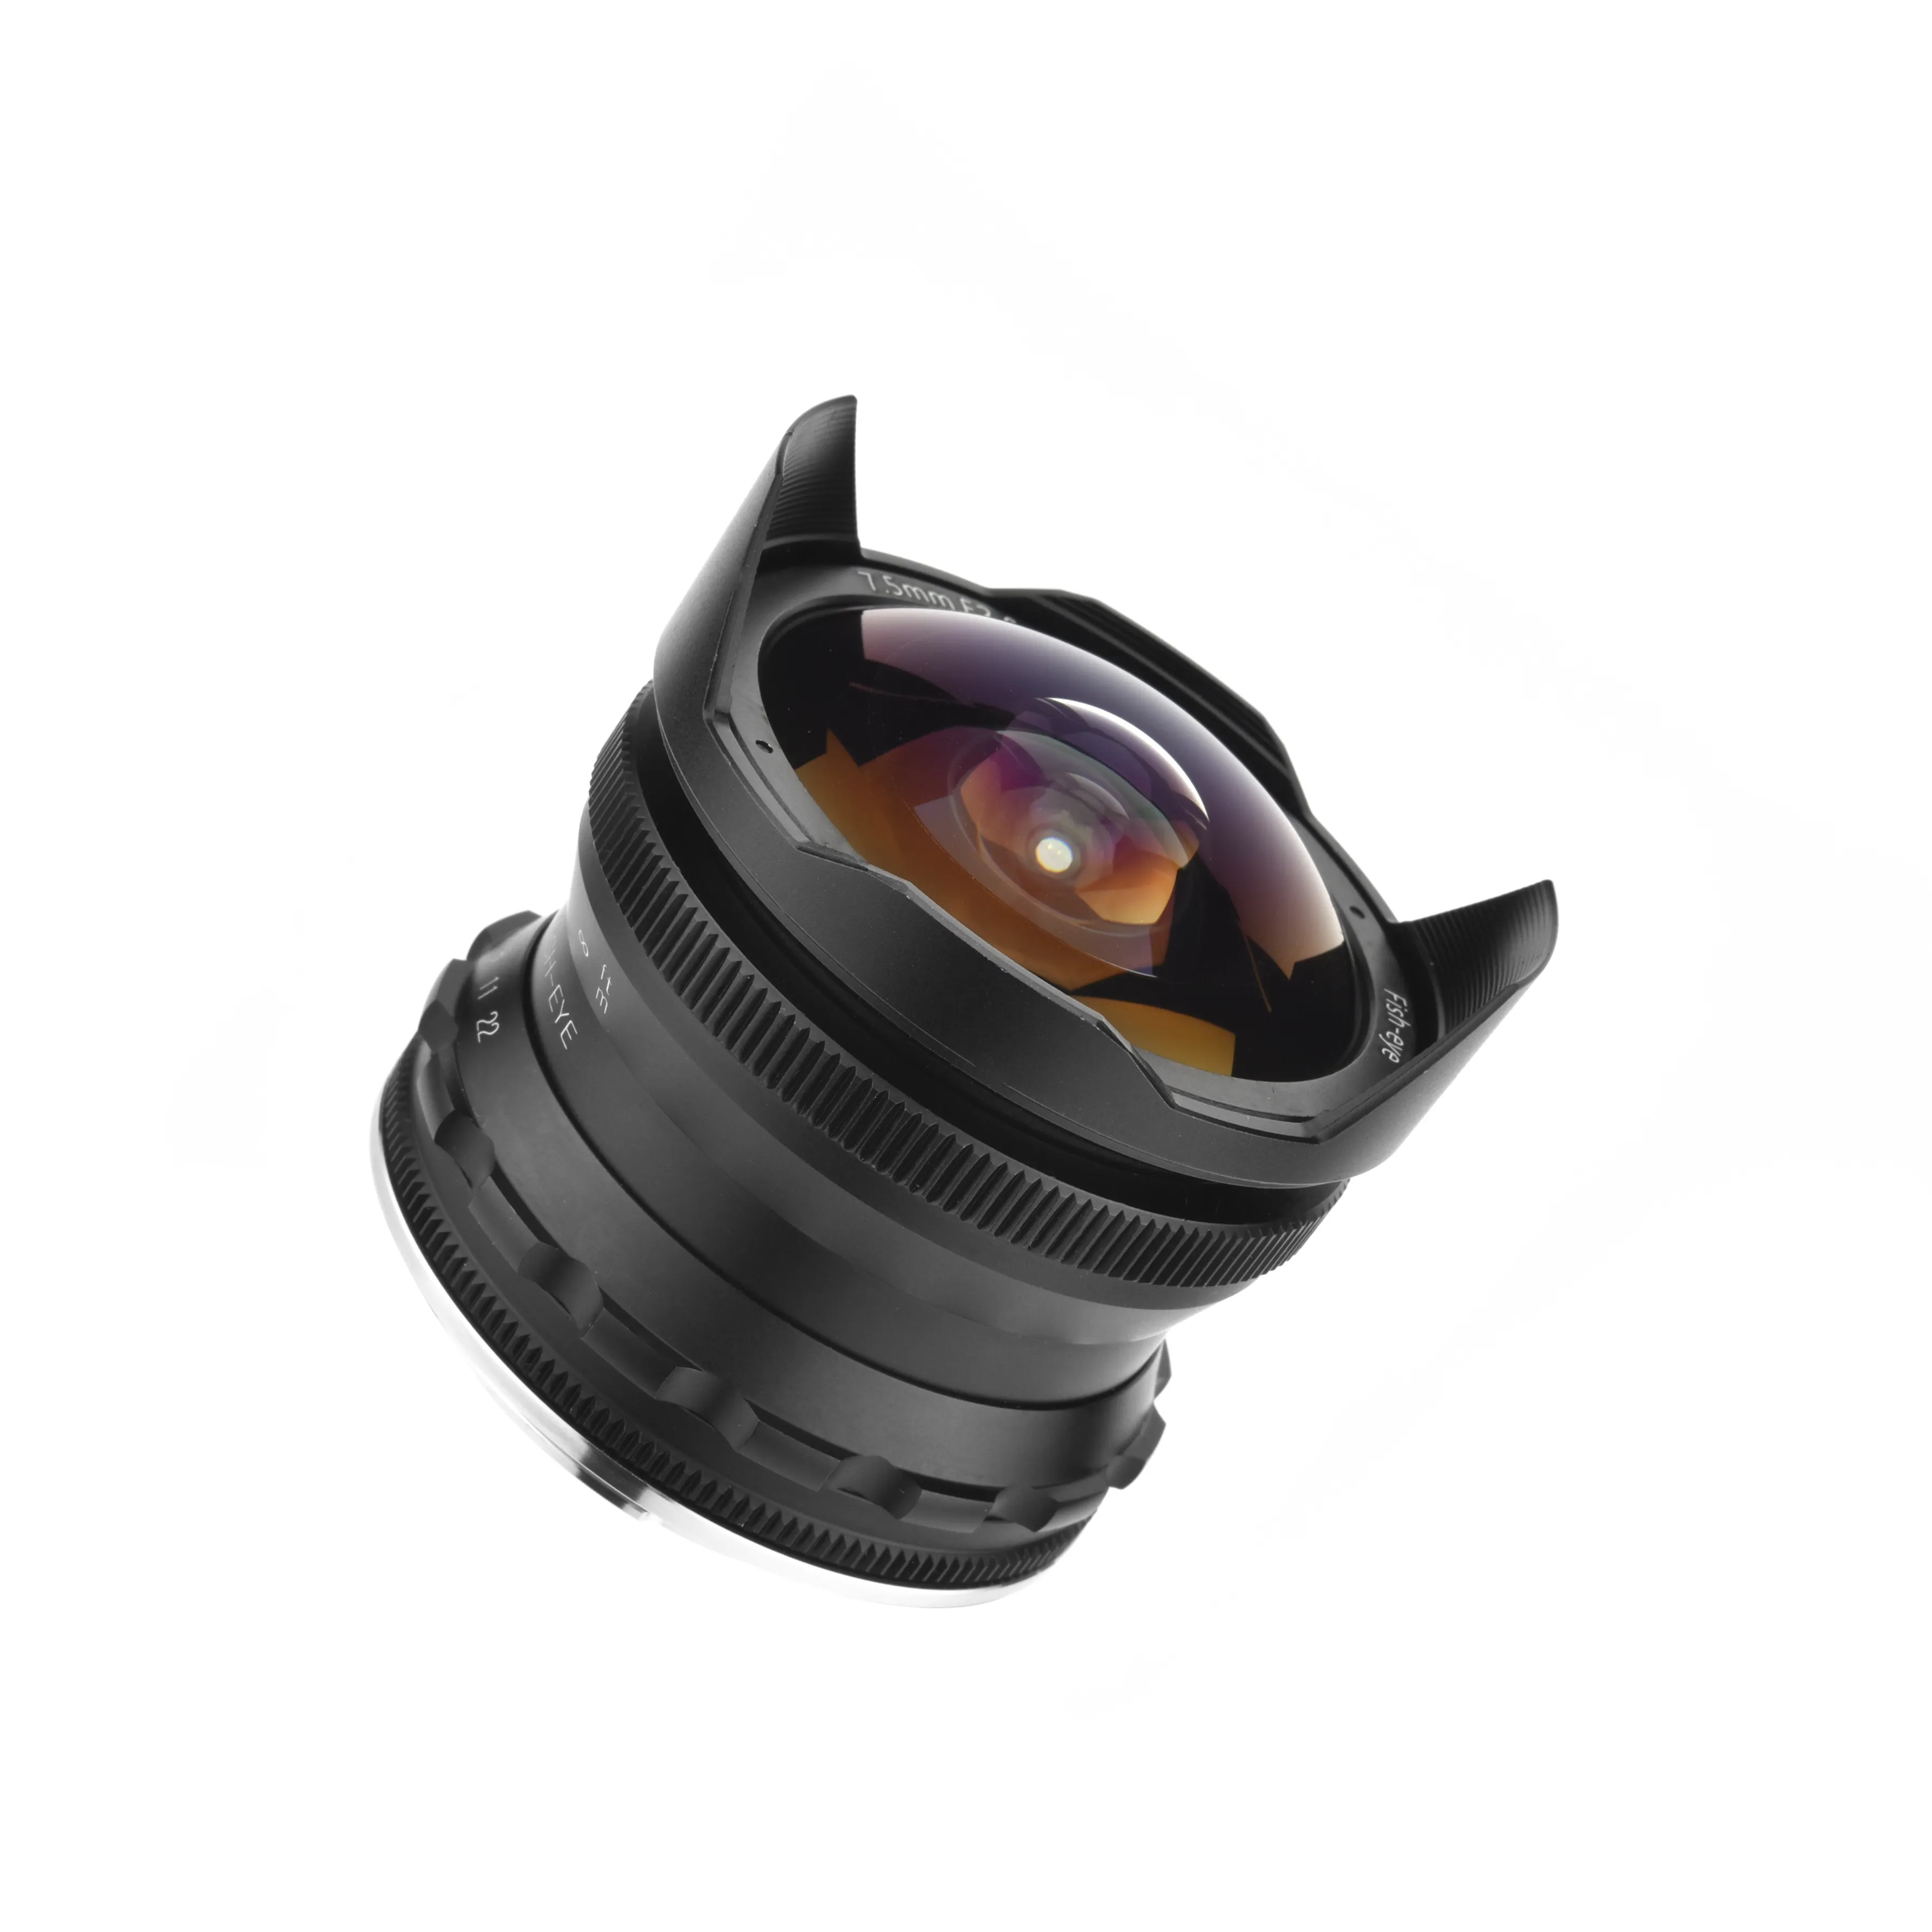 SLR Camera Lens for Canon 7.5mm F2.8 Camera Lens